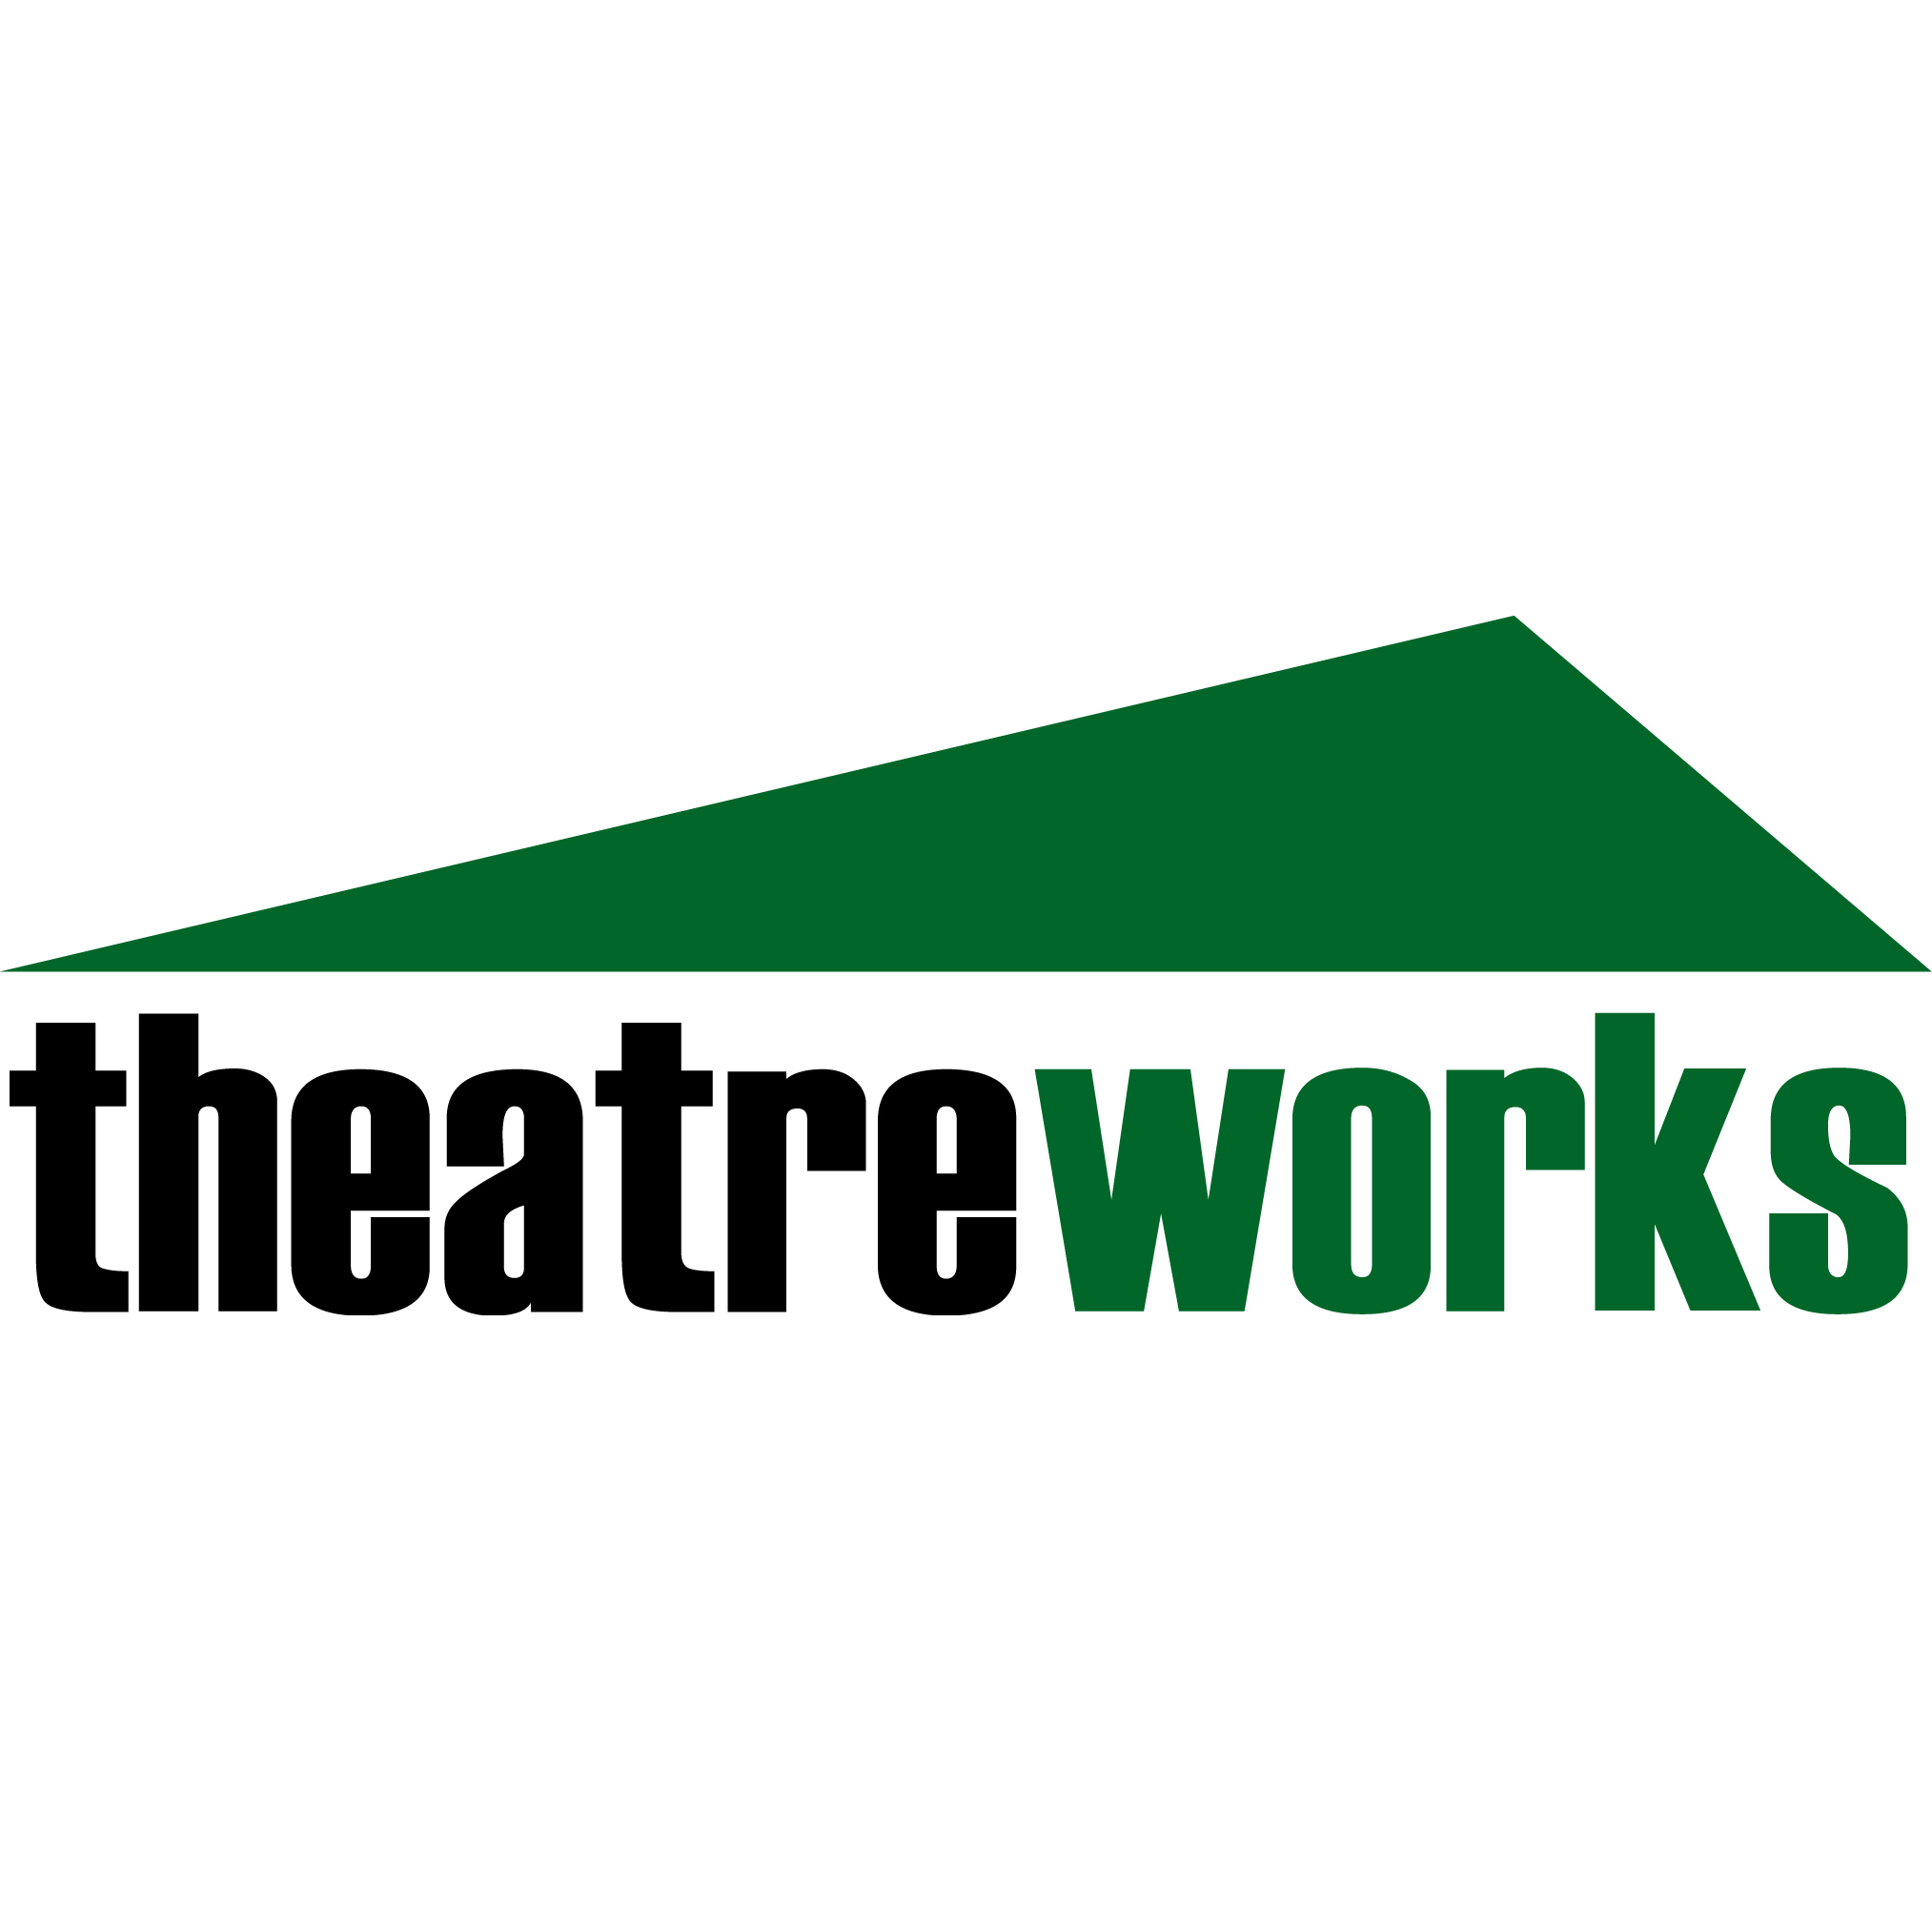 theatreworks